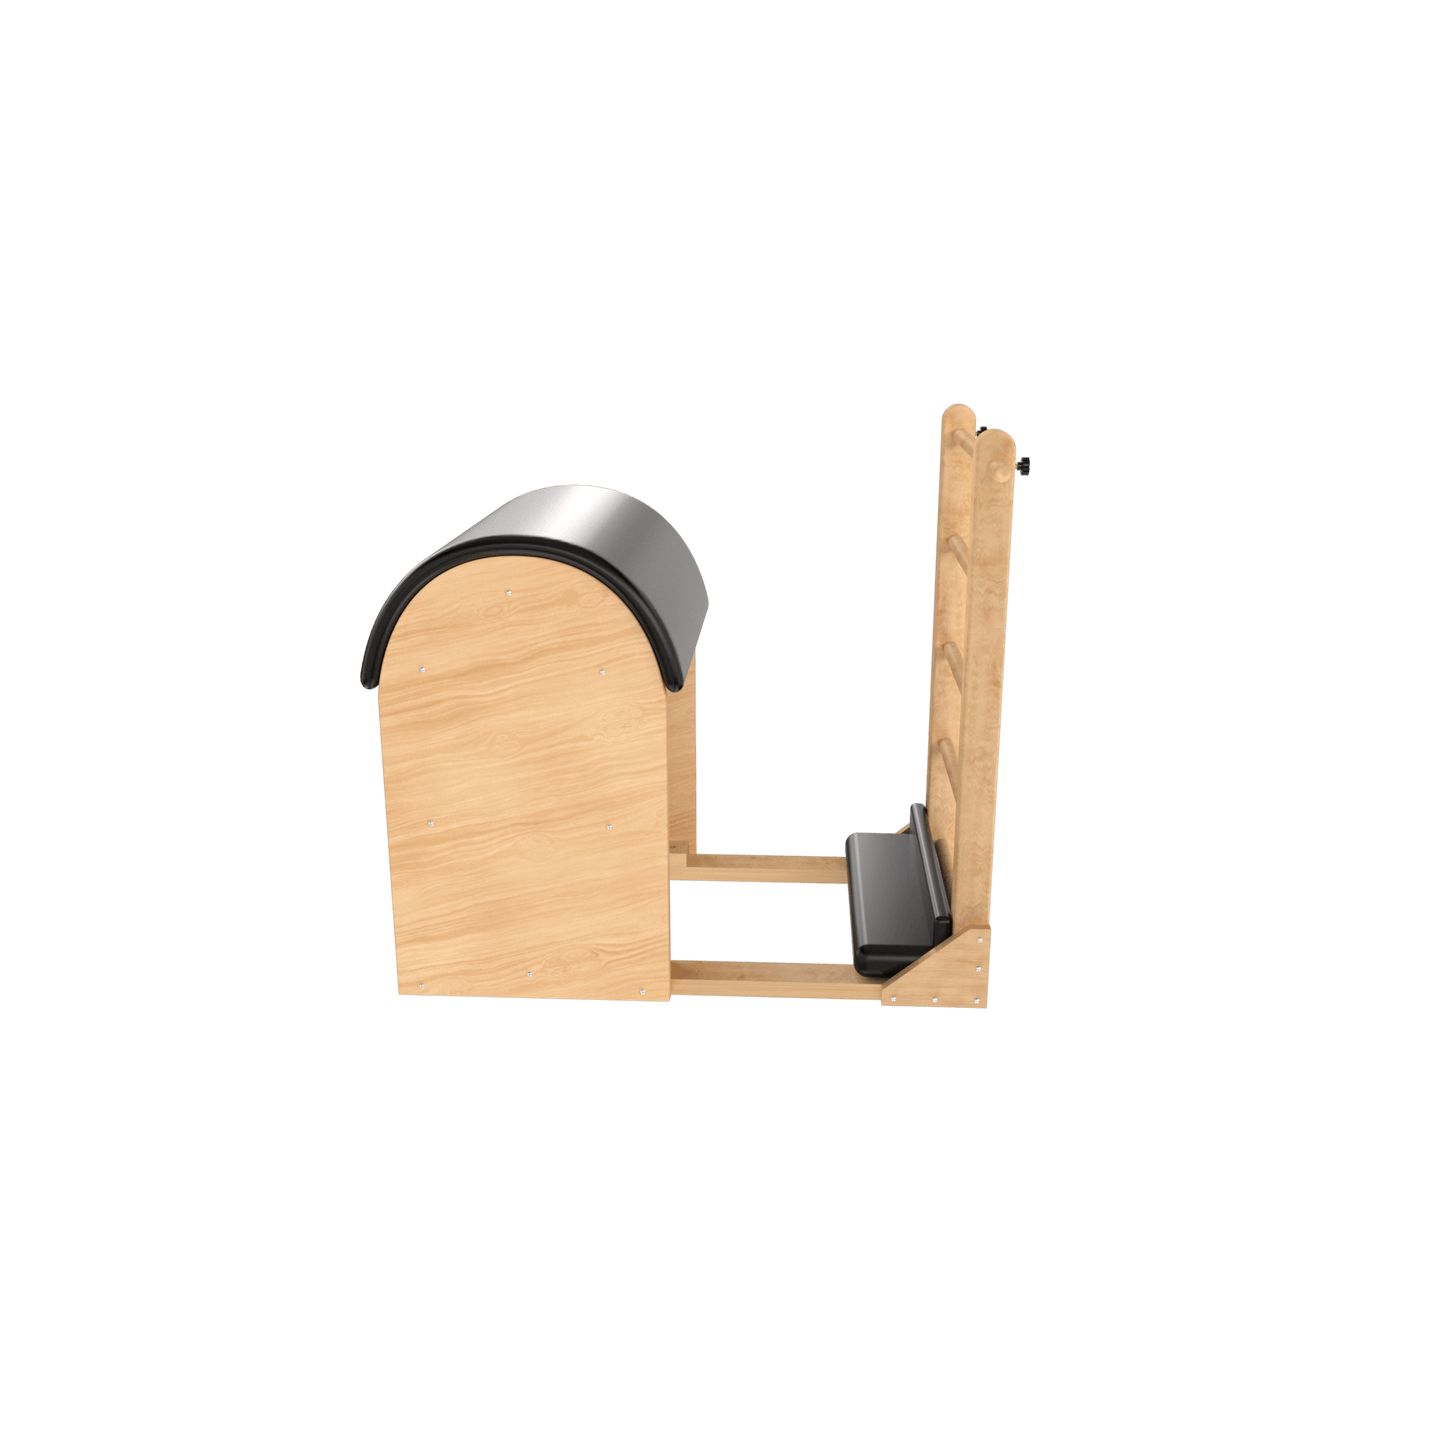 Ladder Barrel - Function